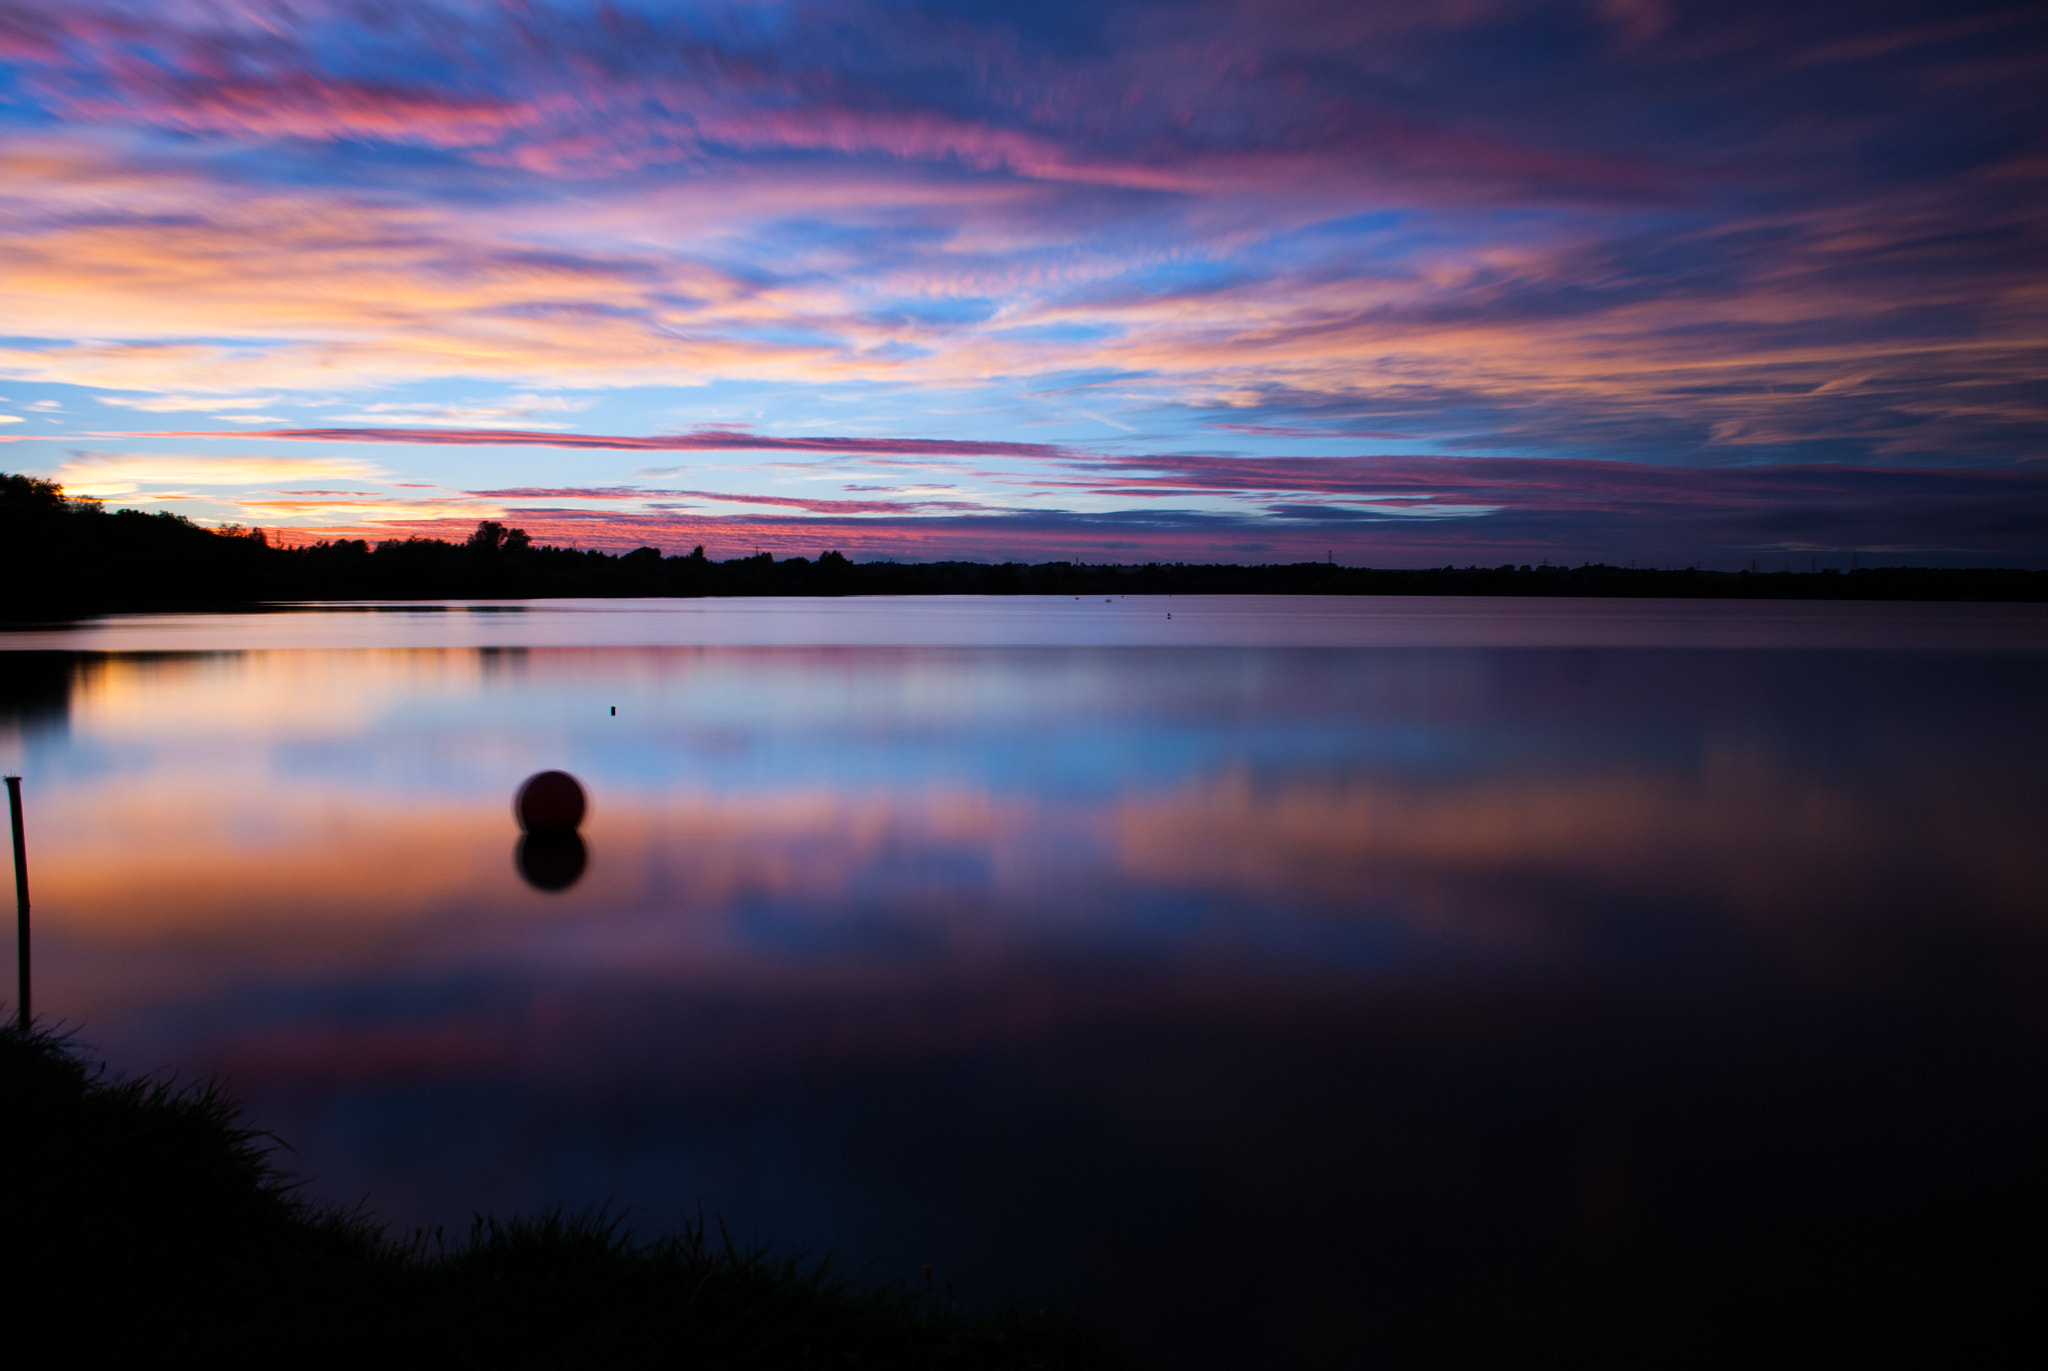 Nikon D80 sample photo. Lake view at dusk. photography